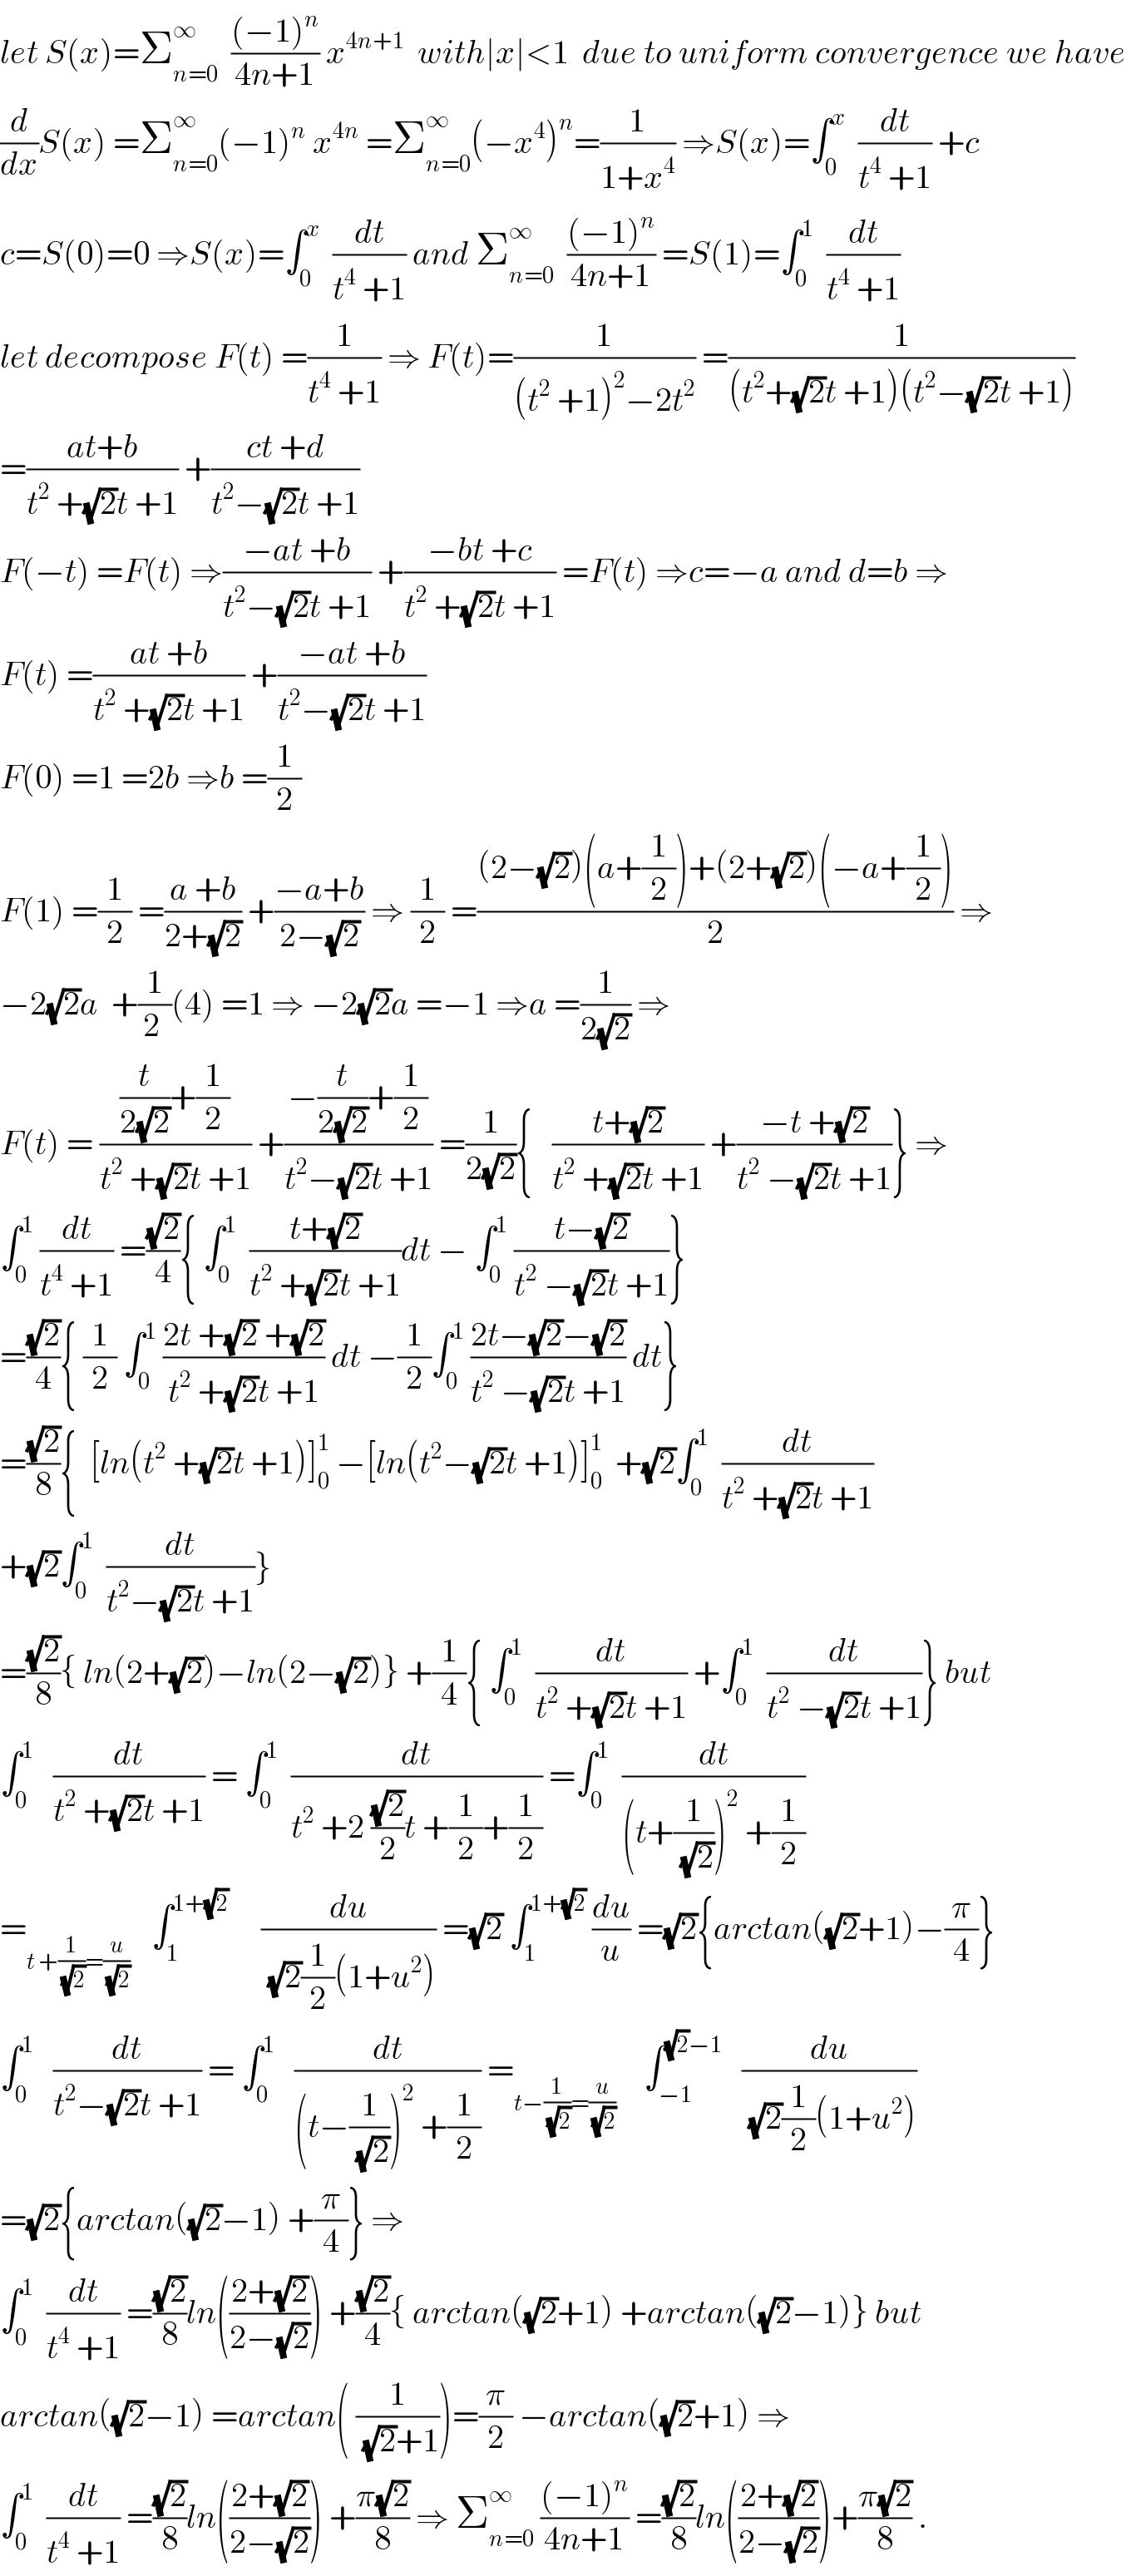 let S(x)=Σ_(n=0) ^∞   (((−1)^n )/(4n+1)) x^(4n+1)   with∣x∣<1  due to uniform convergence we have  (d/dx)S(x) =Σ_(n=0) ^∞ (−1)^n  x^(4n)  =Σ_(n=0) ^∞ (−x^4 )^n =(1/(1+x^4 )) ⇒S(x)=∫_0 ^x   (dt/(t^4  +1)) +c  c=S(0)=0 ⇒S(x)=∫_0 ^x   (dt/(t^4  +1)) and Σ_(n=0) ^∞   (((−1)^n )/(4n+1)) =S(1)=∫_0 ^1   (dt/(t^4  +1))  let decompose F(t) =(1/(t^4  +1)) ⇒ F(t)=(1/((t^2  +1)^2 −2t^2 )) =(1/((t^2 +(√2)t +1)(t^2 −(√2)t +1)))  =((at+b)/(t^2  +(√2)t +1)) +((ct +d)/(t^2 −(√2)t +1))  F(−t) =F(t) ⇒((−at +b)/(t^2 −(√2)t +1)) +((−bt +c)/(t^2  +(√2)t +1)) =F(t) ⇒c=−a and d=b ⇒  F(t) =((at +b)/(t^2  +(√2)t +1)) +((−at +b)/(t^2 −(√2)t +1))  F(0) =1 =2b ⇒b =(1/2)  F(1) =(1/2) =((a +b)/(2+(√2))) +((−a+b)/(2−(√2))) ⇒ (1/2) =(((2−(√2))(a+(1/2))+(2+(√2))(−a+(1/2)))/2) ⇒  −2(√2)a  +(1/(2 ))(4) =1 ⇒ −2(√2)a =−1 ⇒a =(1/(2(√2))) ⇒  F(t) = (((t/(2(√2)))+(1/2))/(t^2  +(√2)t +1)) +((−(t/(2(√2)))+(1/2))/(t^2 −(√2)t +1)) =(1/(2(√2))){   ((t+(√2))/(t^2  +(√2)t +1)) +((−t +(√2))/(t^2  −(√2)t +1))} ⇒  ∫_0 ^1  (dt/(t^4  +1)) =((√2)/4){ ∫_0 ^1   ((t+(√2))/(t^2  +(√2)t +1))dt − ∫_0 ^1  ((t−(√2))/(t^2  −(√2)t +1))}  =((√2)/4){ (1/2) ∫_0 ^1  ((2t +(√2) +(√2))/(t^2  +(√2)t +1)) dt −(1/2)∫_0 ^1  ((2t−(√2)−(√2))/(t^2  −(√2)t +1)) dt}  =((√2)/8){  [ln(t^2  +(√2)t +1)]_0 ^1  −[ln(t^2 −(√2)t +1)]_0 ^1   +(√2)∫_0 ^1   (dt/(t^2  +(√2)t +1))  +(√2)∫_0 ^1   (dt/(t^2 −(√2)t +1))}  =((√2)/8){ ln(2+(√2))−ln(2−(√2))} +(1/4){ ∫_0 ^1   (dt/(t^2  +(√2)t +1)) +∫_0 ^1   (dt/(t^2  −(√2)t +1))} but  ∫_0 ^1    (dt/(t^2  +(√2)t +1)) = ∫_0 ^1   (dt/(t^2  +2 ((√2)/2)t +(1/2)+(1/2))) =∫_0 ^1   (dt/((t+(1/(√2)))^2  +(1/2)))  =_(t +(1/(√2))=(u/(√2)))    ∫_1 ^(1+(√2))      (du/((√2)(1/2)(1+u^2 ))) =(√2) ∫_1 ^(1+(√2))  (du/u) =(√2){arctan((√2)+1)−(π/4)}  ∫_0 ^1    (dt/(t^2 −(√2)t +1)) = ∫_0 ^1    (dt/((t−(1/(√2)))^2  +(1/2))) =_(t−(1/(√2))=(u/(√2)))     ∫_(−1) ^((√2)−1)    (du/((√2)(1/2)(1+u^2 )))  =(√2){arctan((√2)−1) +(π/4)} ⇒  ∫_0 ^1   (dt/(t^4  +1)) =((√2)/8)ln(((2+(√2))/(2−(√2)))) +((√2)/4){ arctan((√2)+1) +arctan((√2)−1)} but  arctan((√2)−1) =arctan( (1/((√2)+1)))=(π/2) −arctan((√2)+1) ⇒  ∫_0 ^1   (dt/(t^4  +1)) =((√2)/8)ln(((2+(√2))/(2−(√2)))) +((π(√2))/8) ⇒ Σ_(n=0) ^∞  (((−1)^n )/(4n+1)) =((√2)/8)ln(((2+(√2))/(2−(√2))))+((π(√2))/8) .  